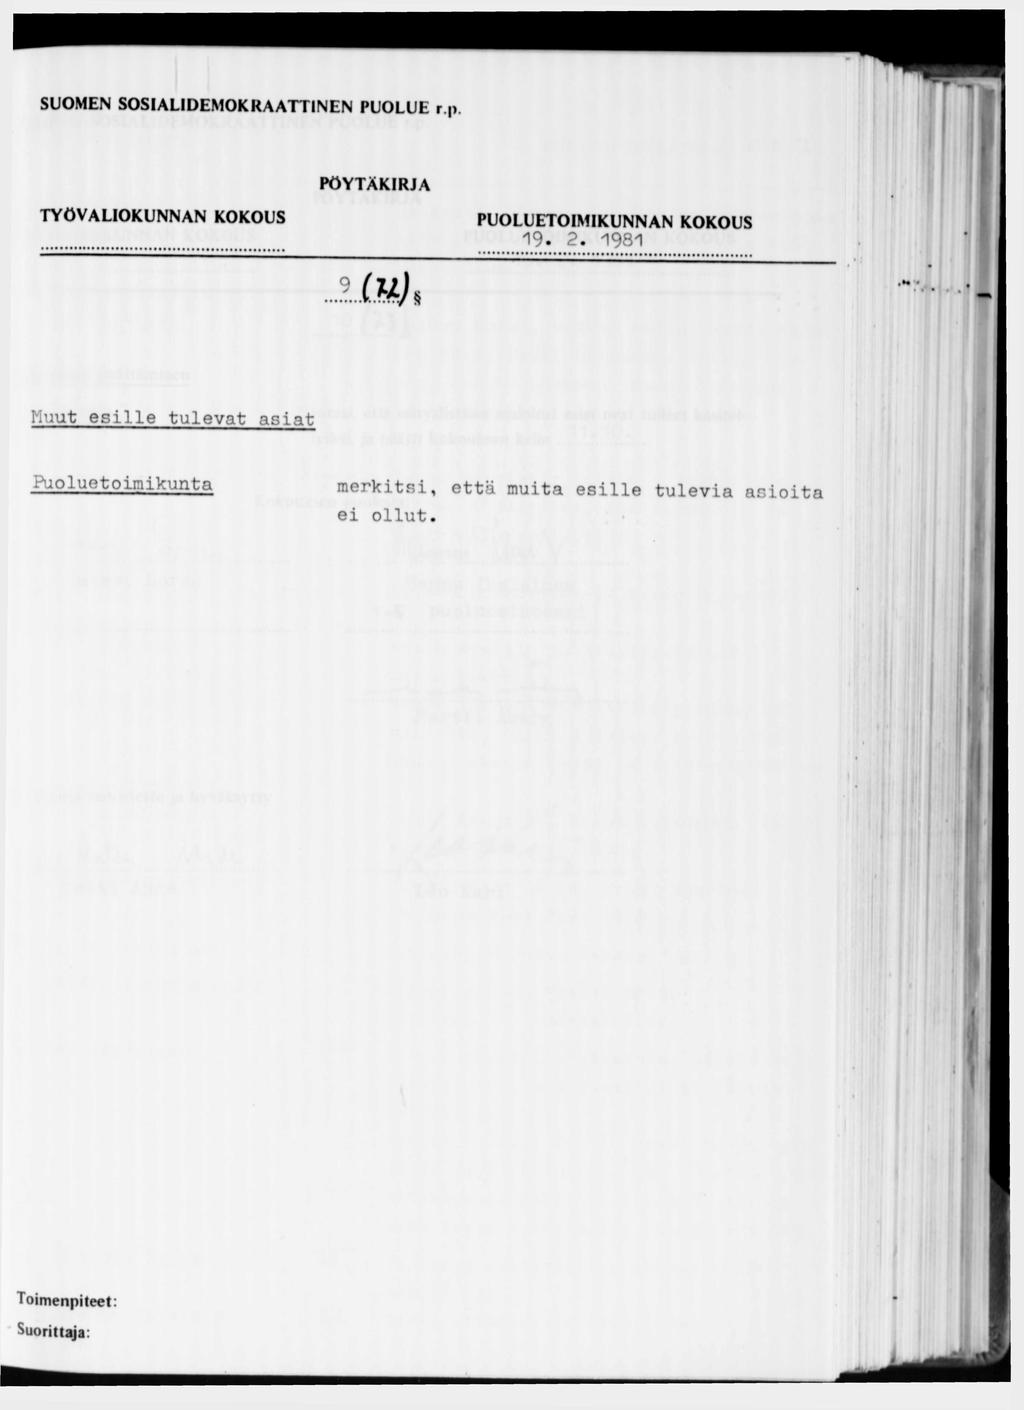 SUOMEN SOSIALIDEMOKRAATTINEN PUOLUE r.p. PÖYTÄK IRJA 19. 2.1981.